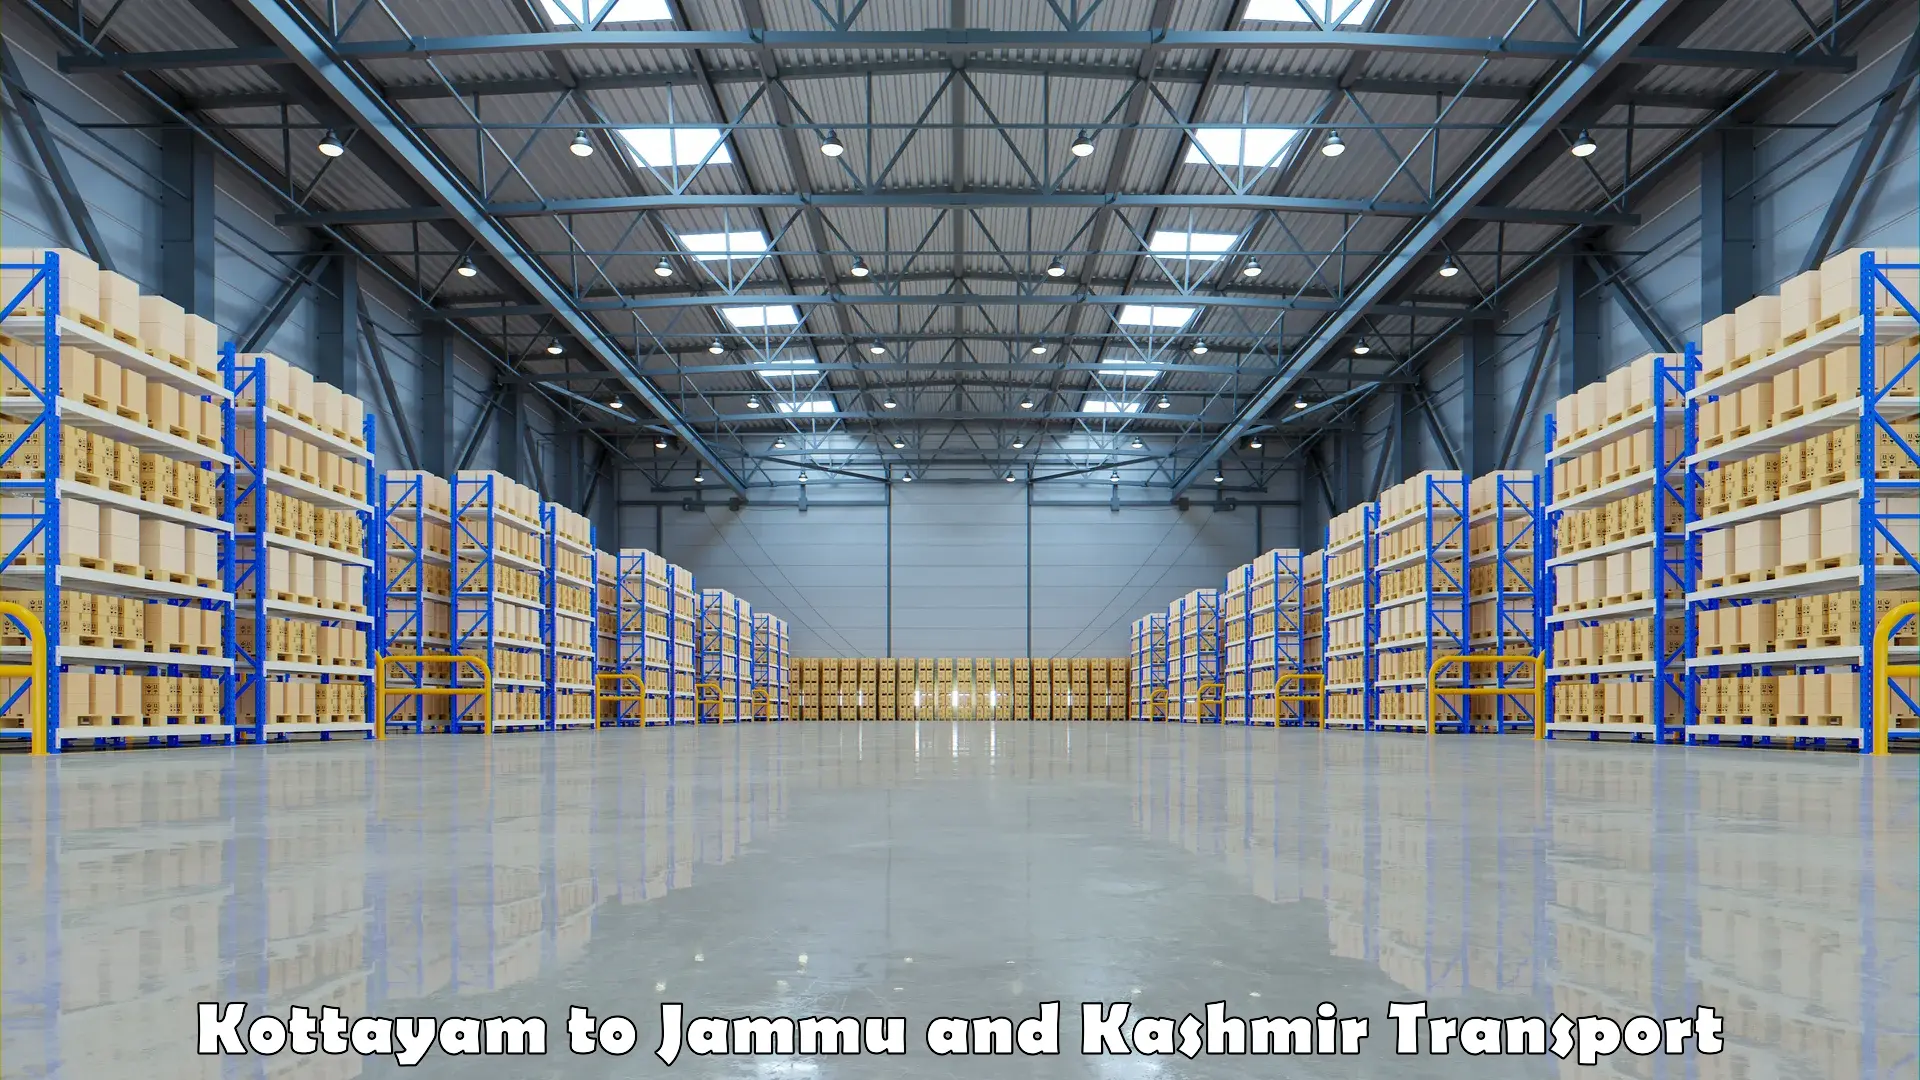 Truck transport companies in India Kottayam to Kulgam